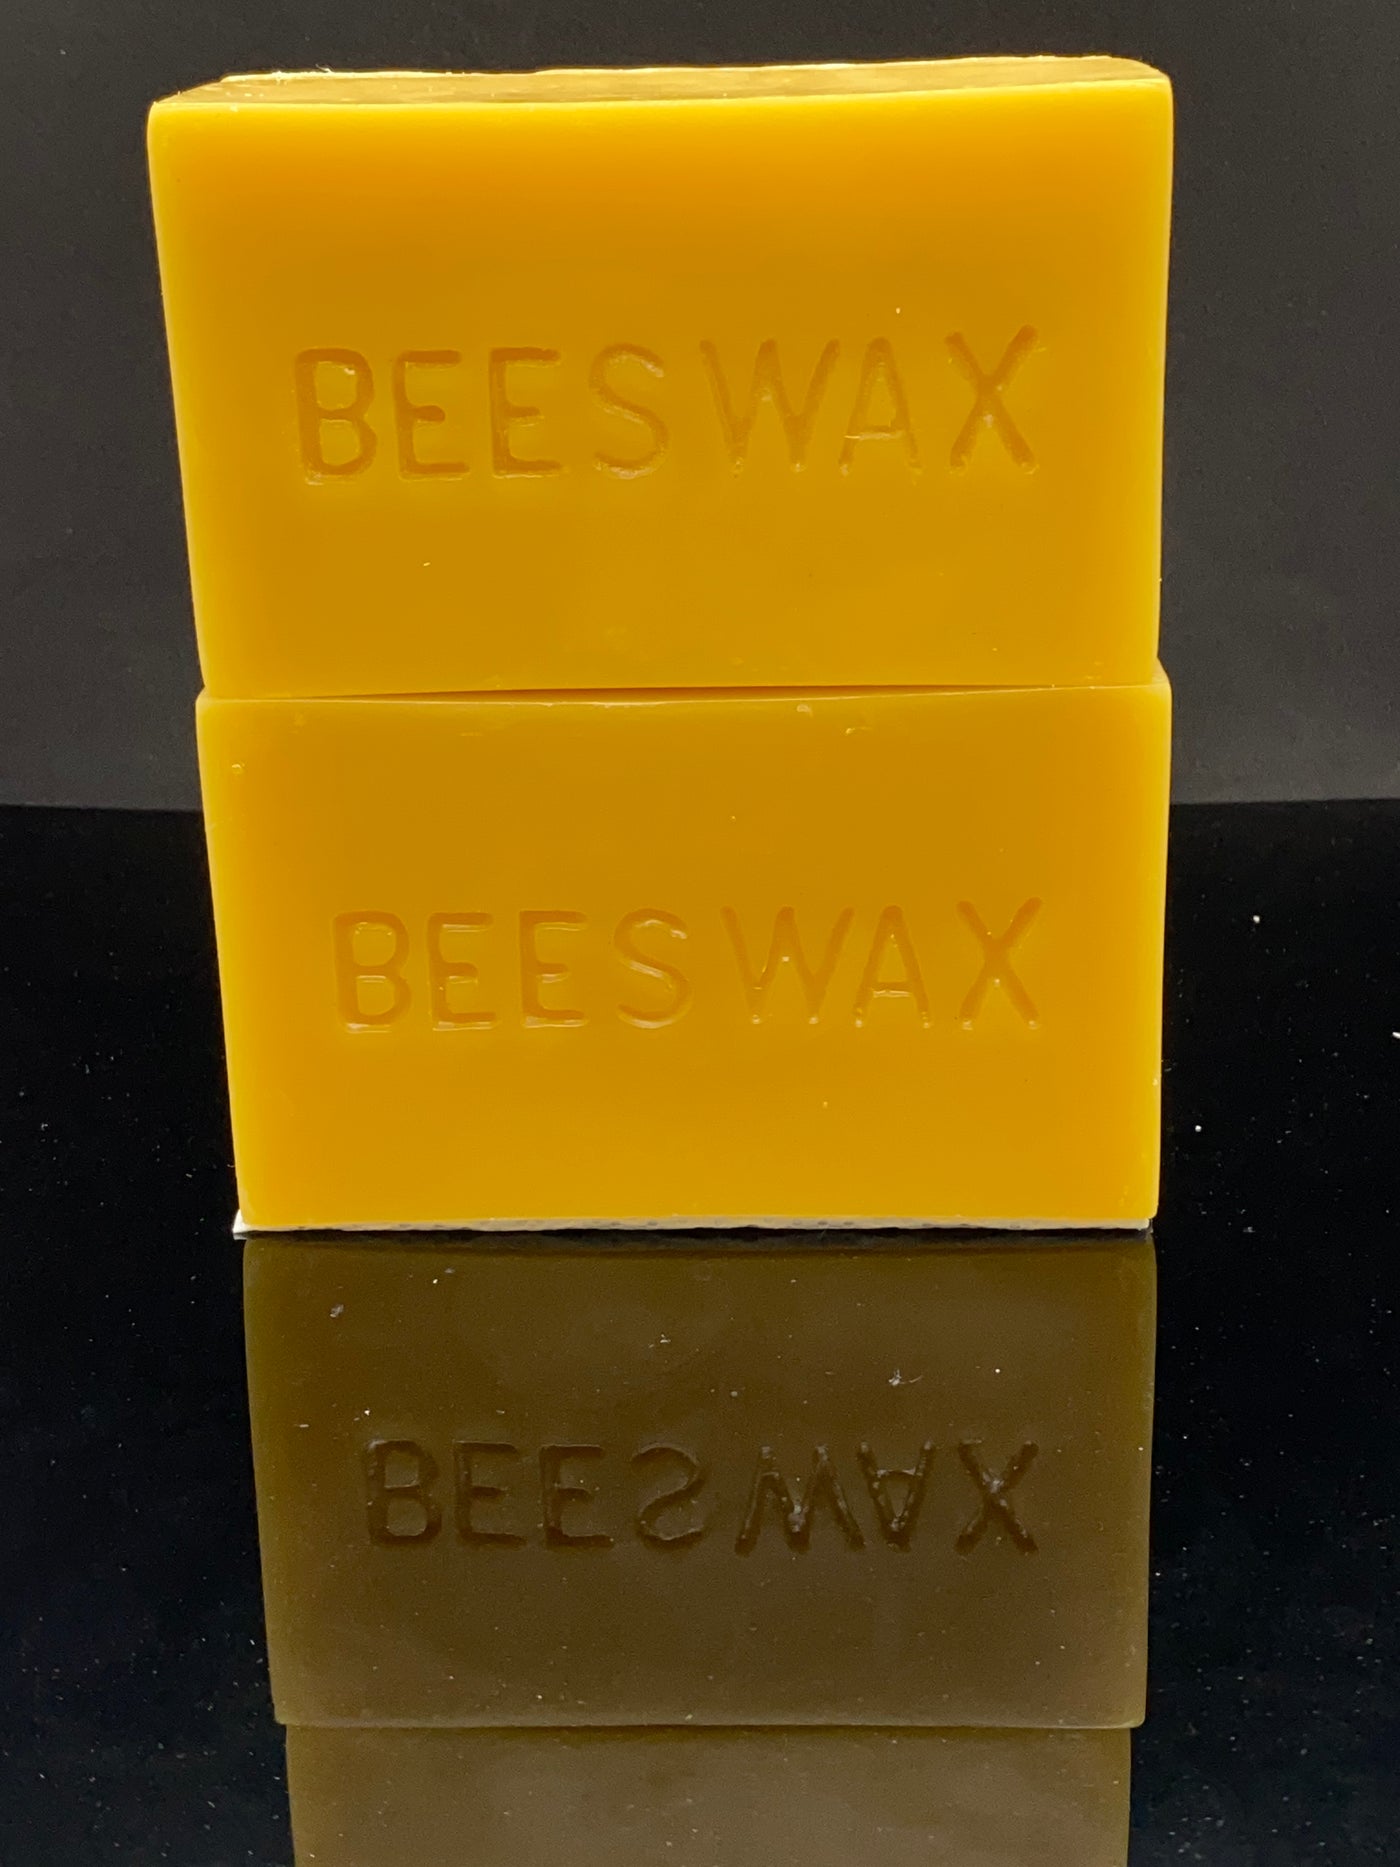 Bulk Filtered Beeswax – BeeKind Honey Bees Inc.